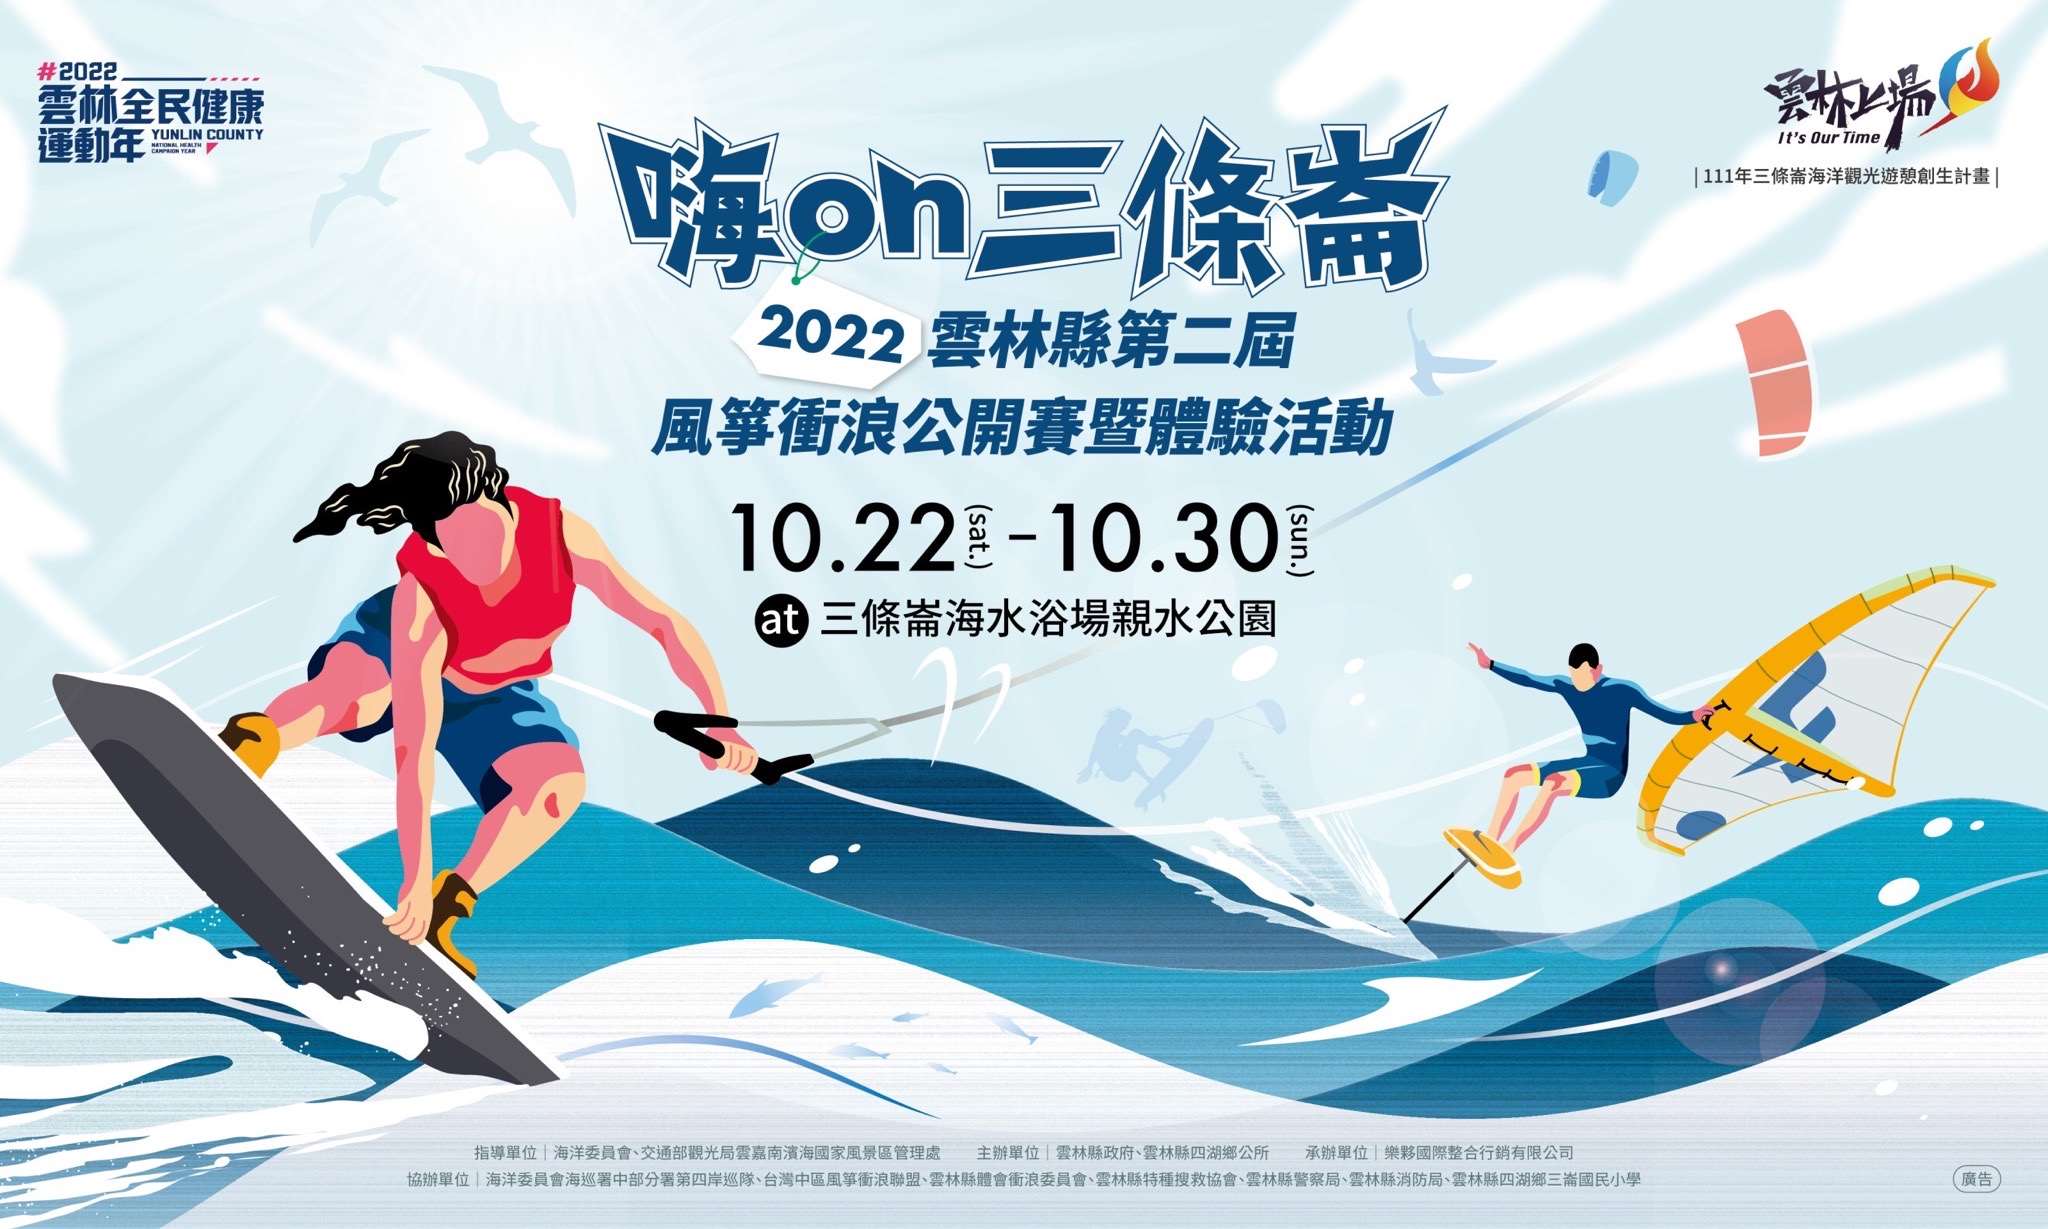 2022雲林縣第二屆風箏衝浪公開賽暨體驗活動 首波報名登場!